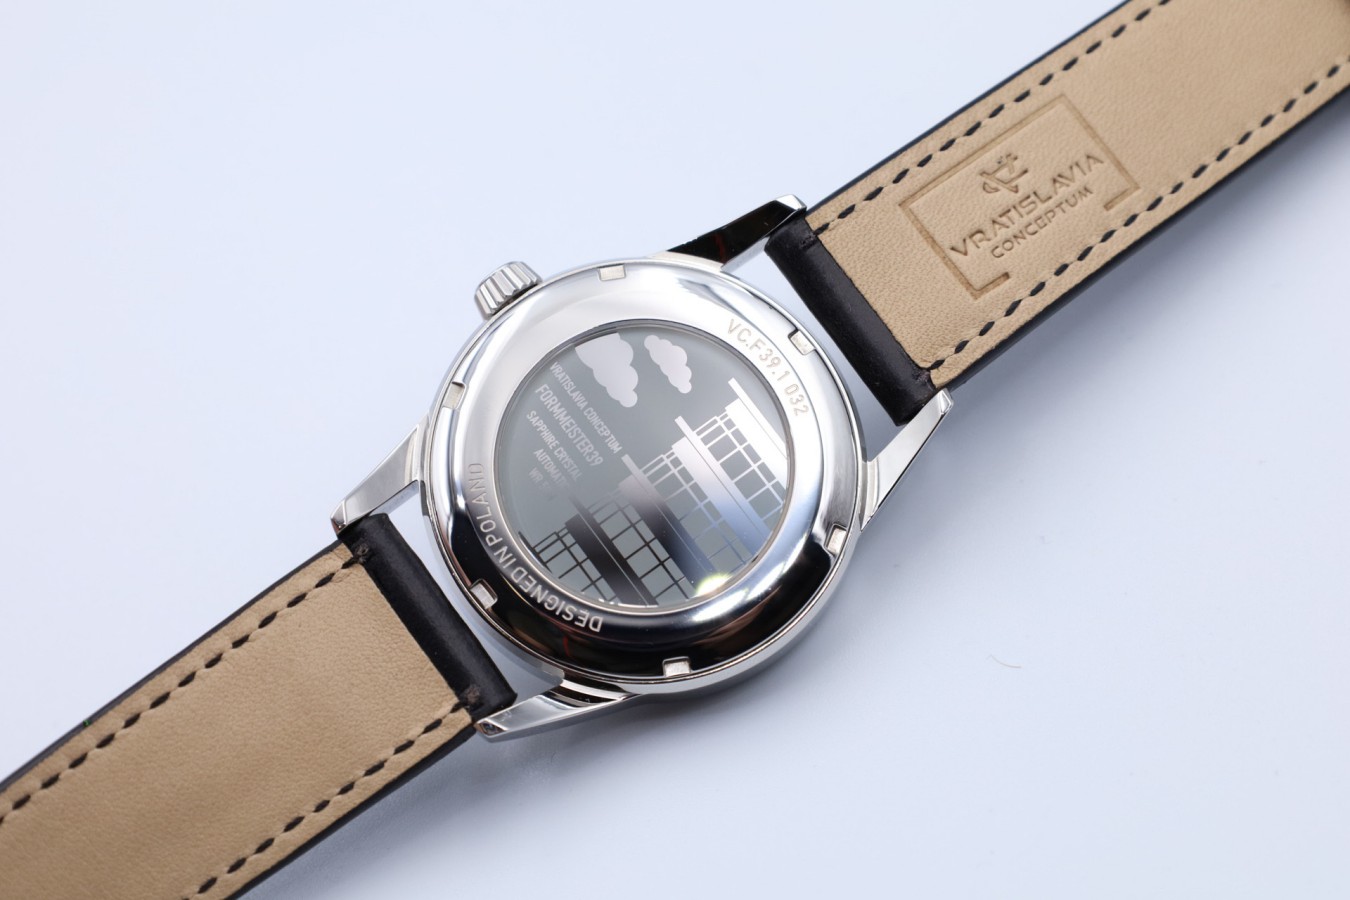 11 marek stanowiących ciekawą alternatywę dla zegarków z mainstreamu